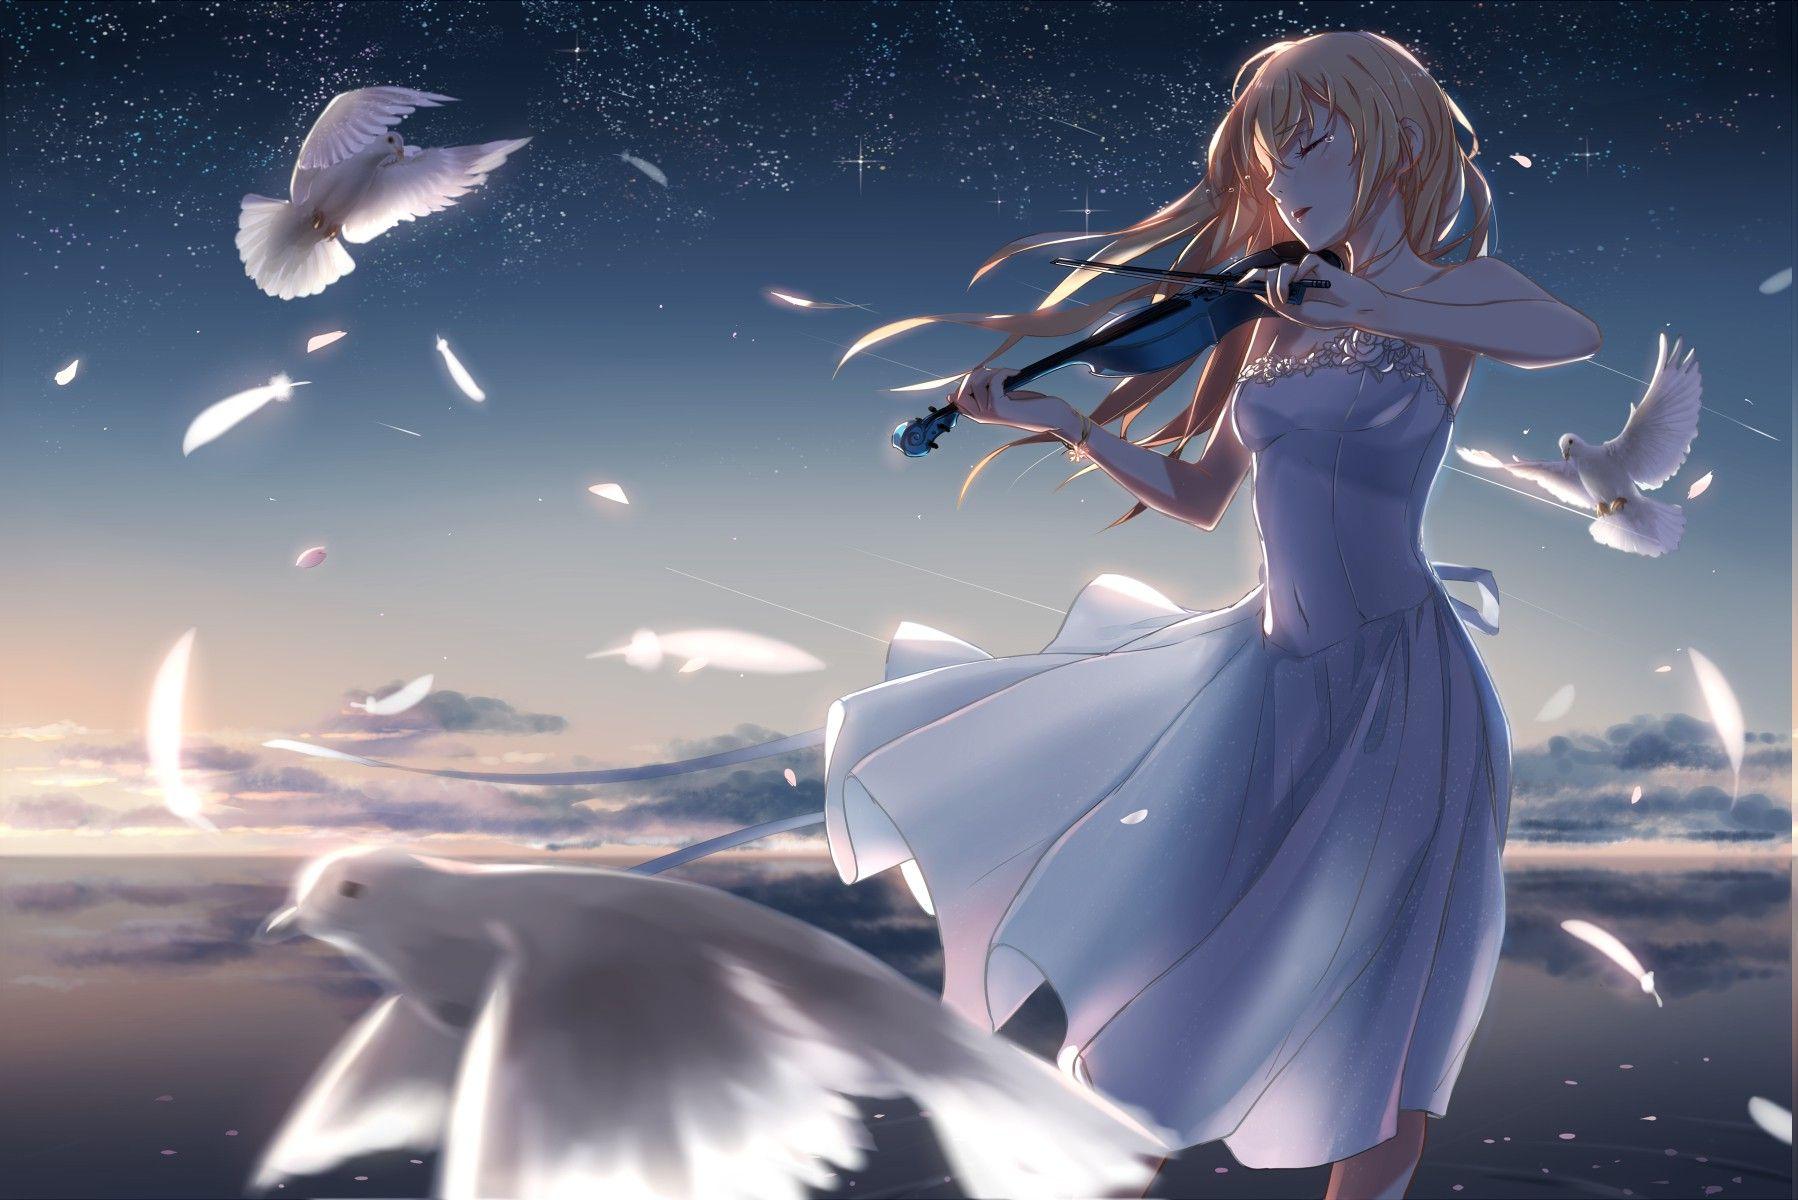 Wallpaper, birds, long hair, anime girls, water, space, sky, white